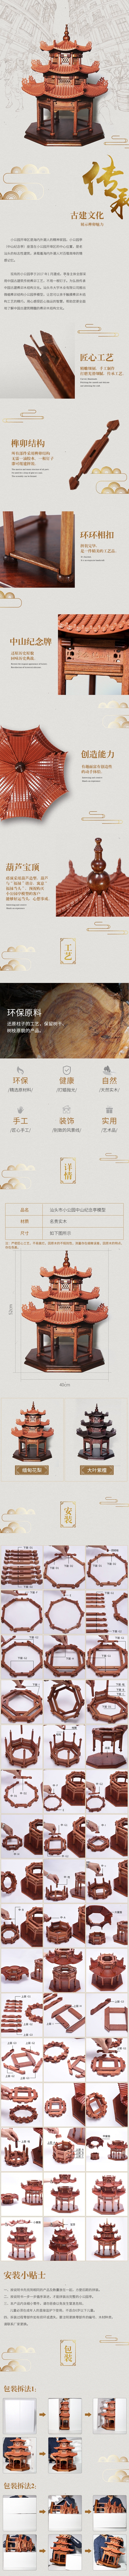 淘宝美工y221699汕头市小公园中山纪念亭模型 详情页作品